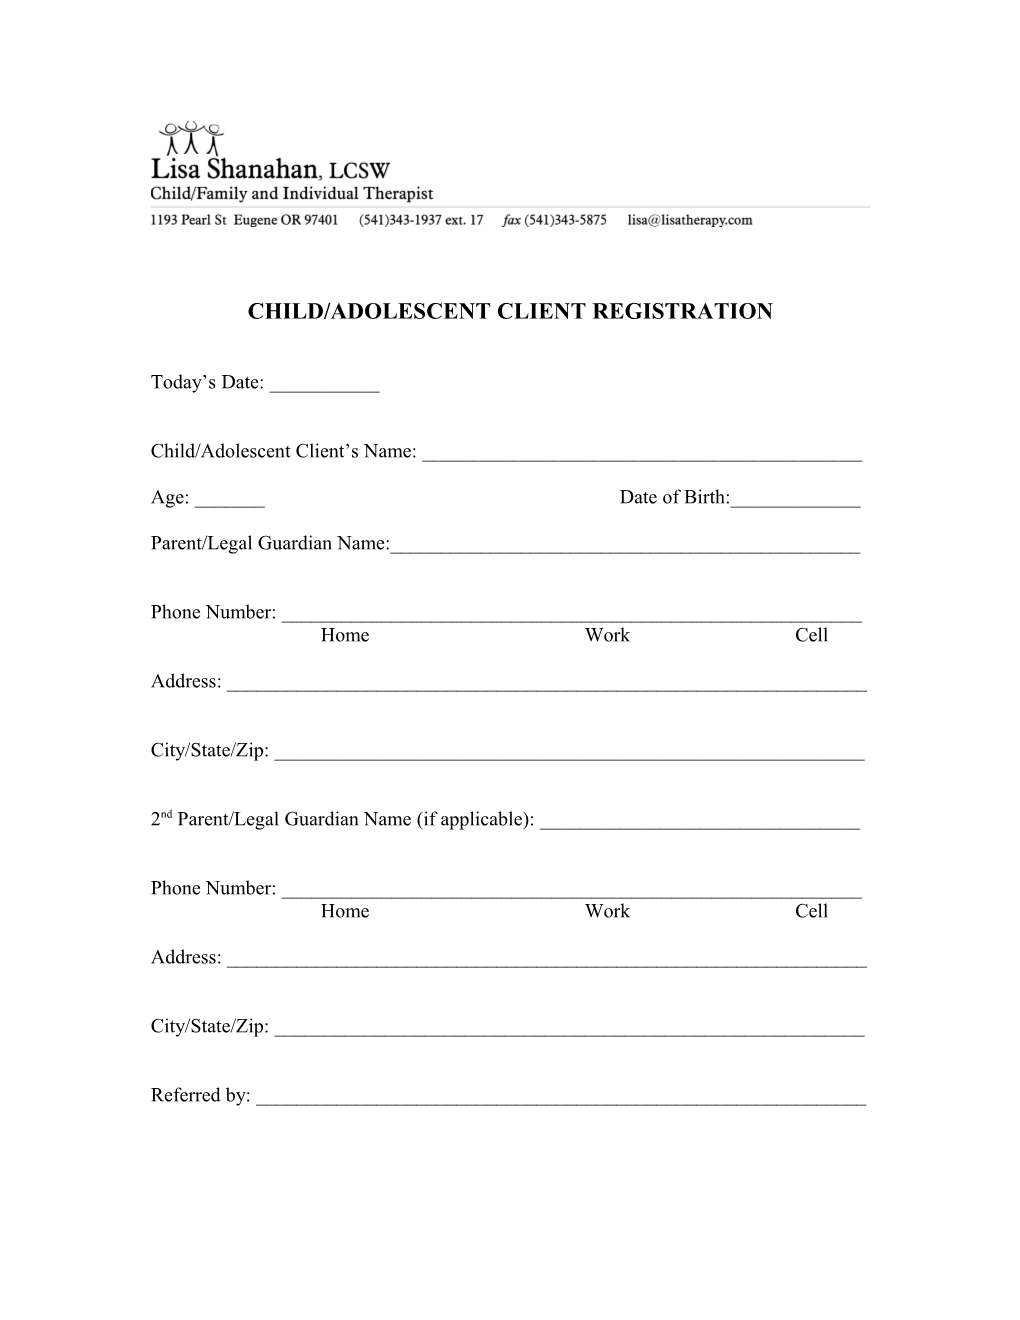 Child/Adolescent Client Registration